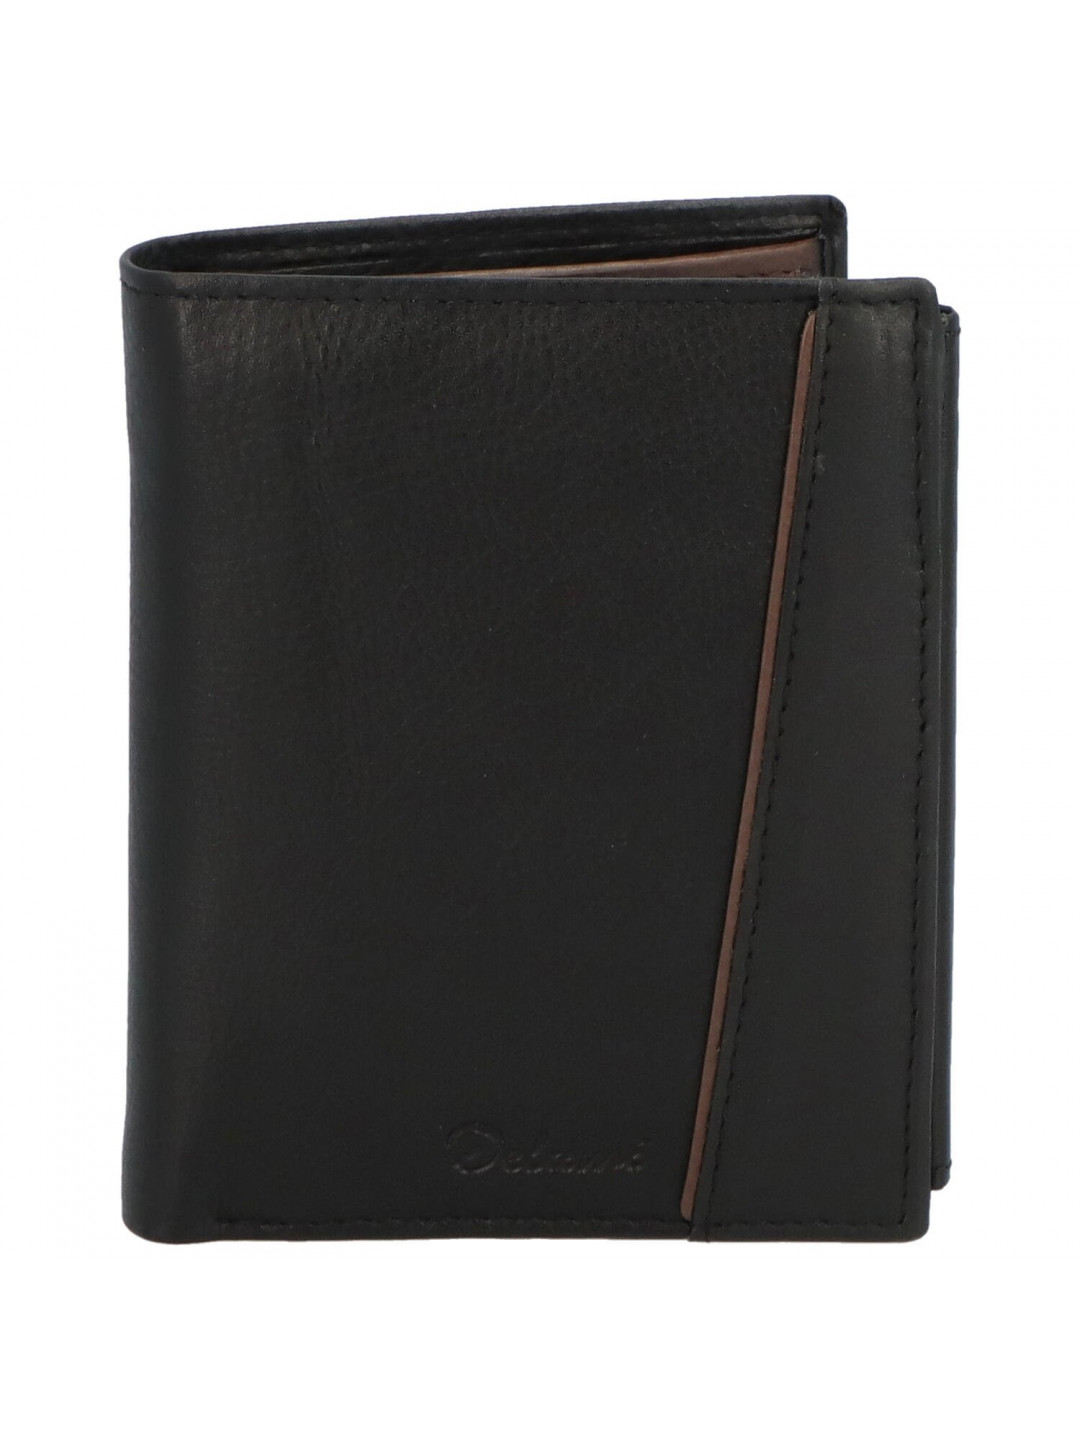 Pánská kožená peněženka černo hnědá – Delami Elain